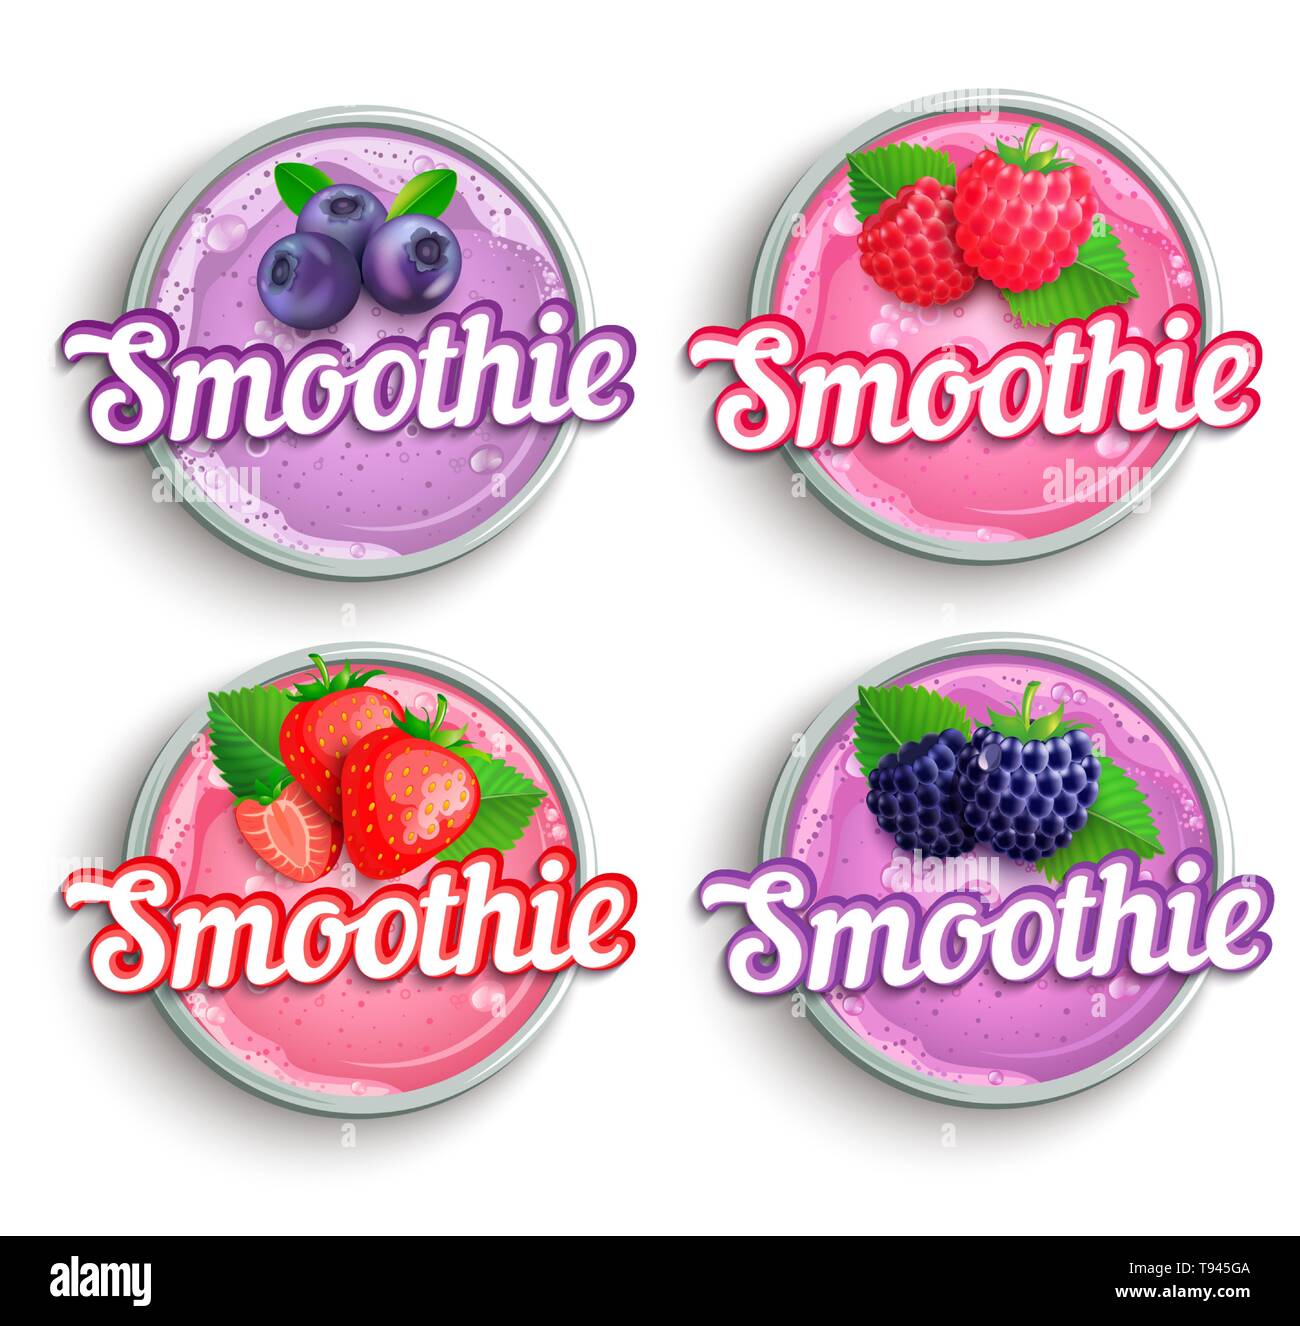 Jeu de fraise, mûre, framboise, myrtille smoothie frais logo. Illustration de Vecteur